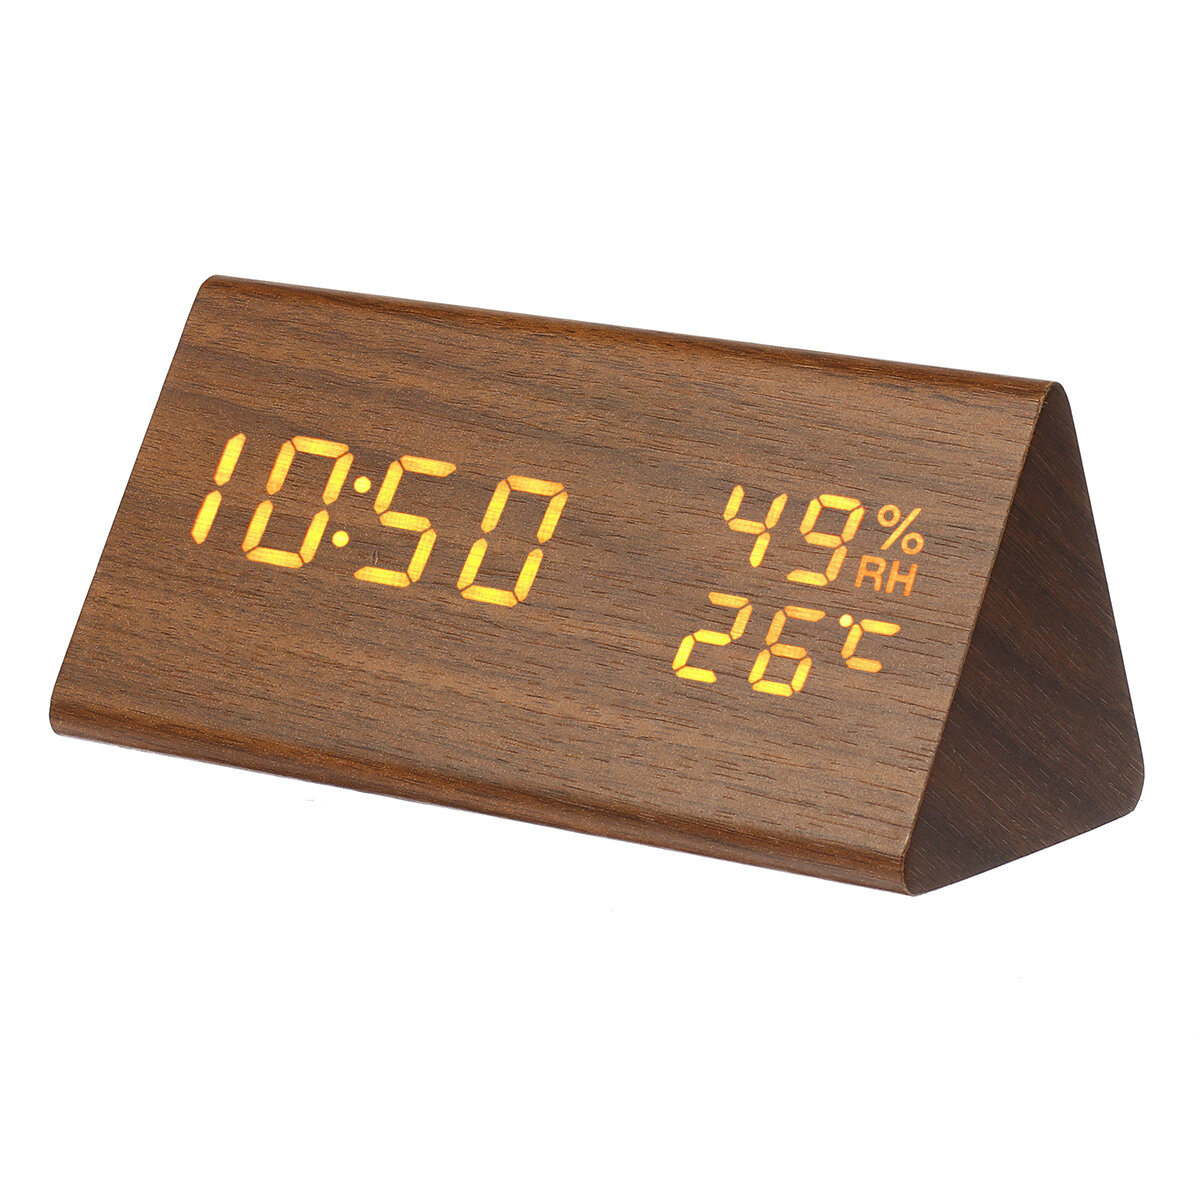 

Треугольник электронный будильник Часы настольный цифровой деревянный LED время Дисплей Часы для спальни бизнес офис вре